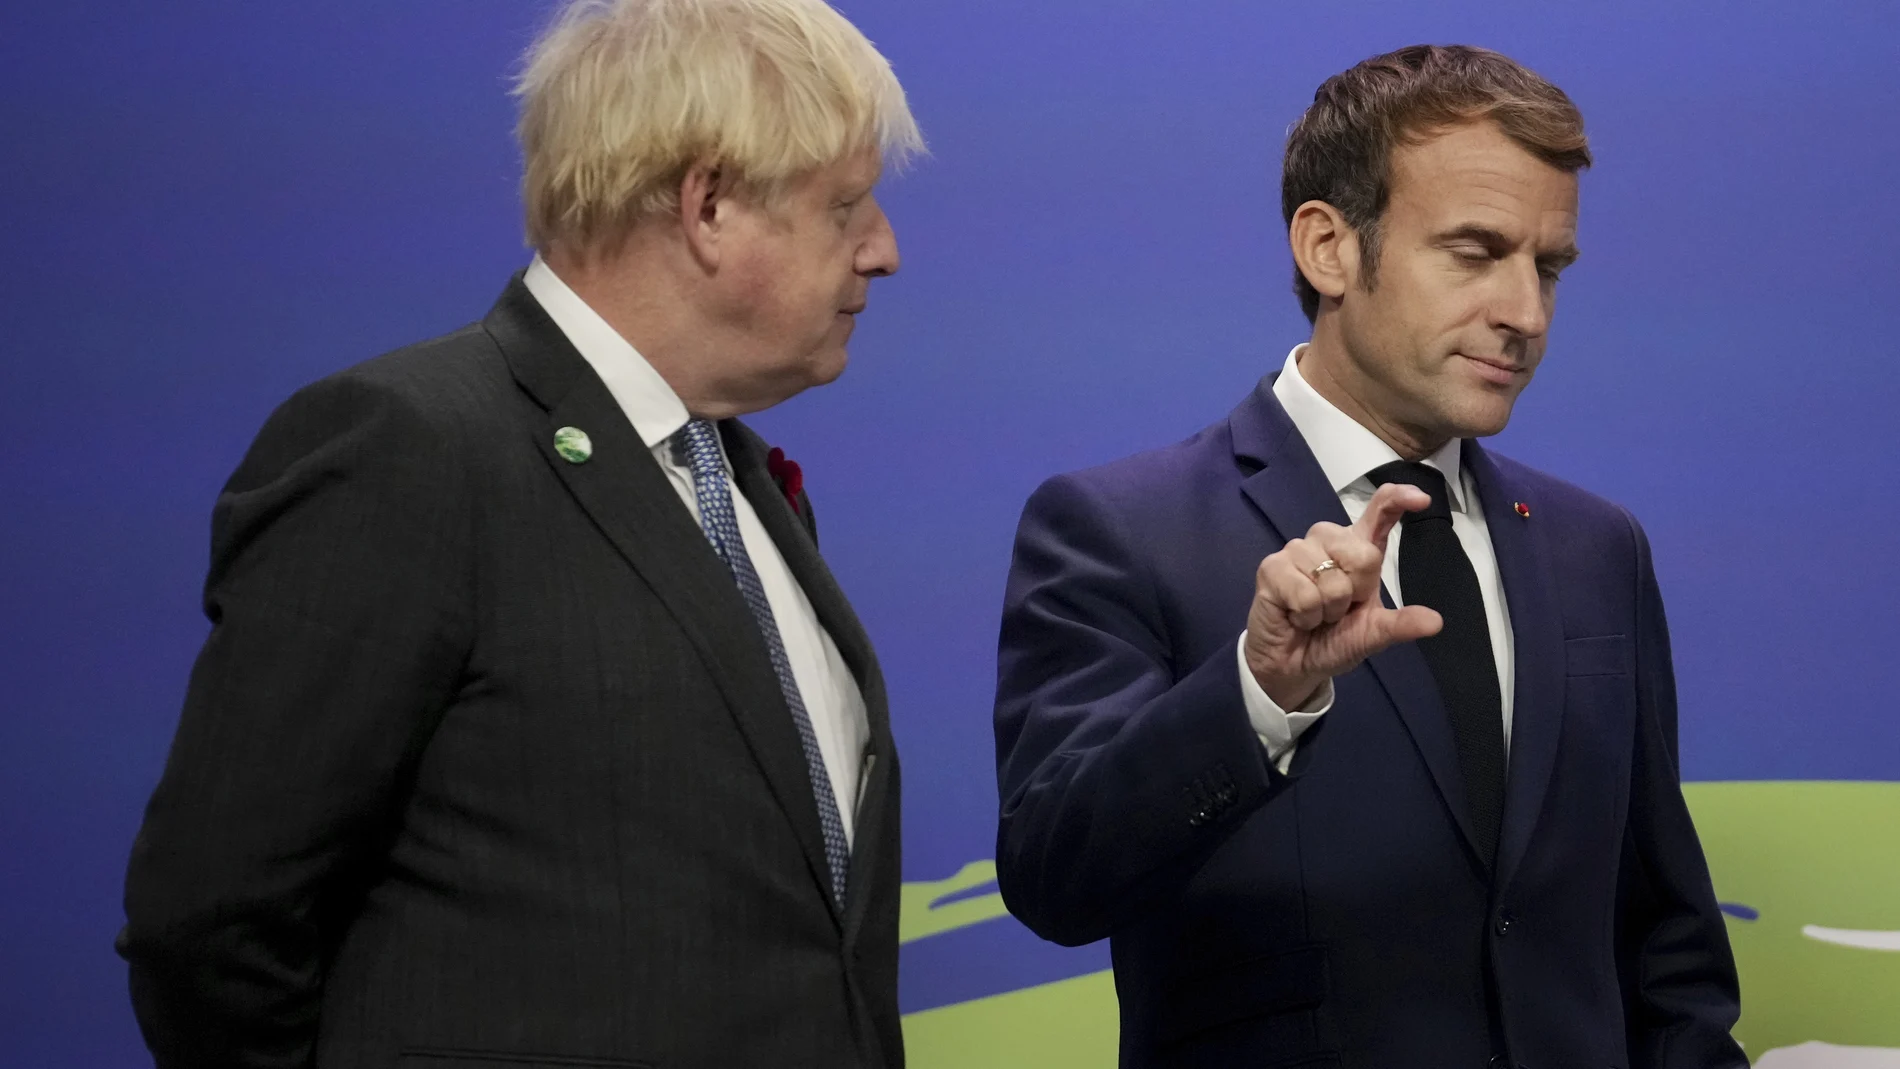 Francia se ha comprometido a hacer propuestas para hacer frente a la crisis migratoria en el Canal, e incluso sugirió que se podrían reanudar las conversaciones con Reino Unido